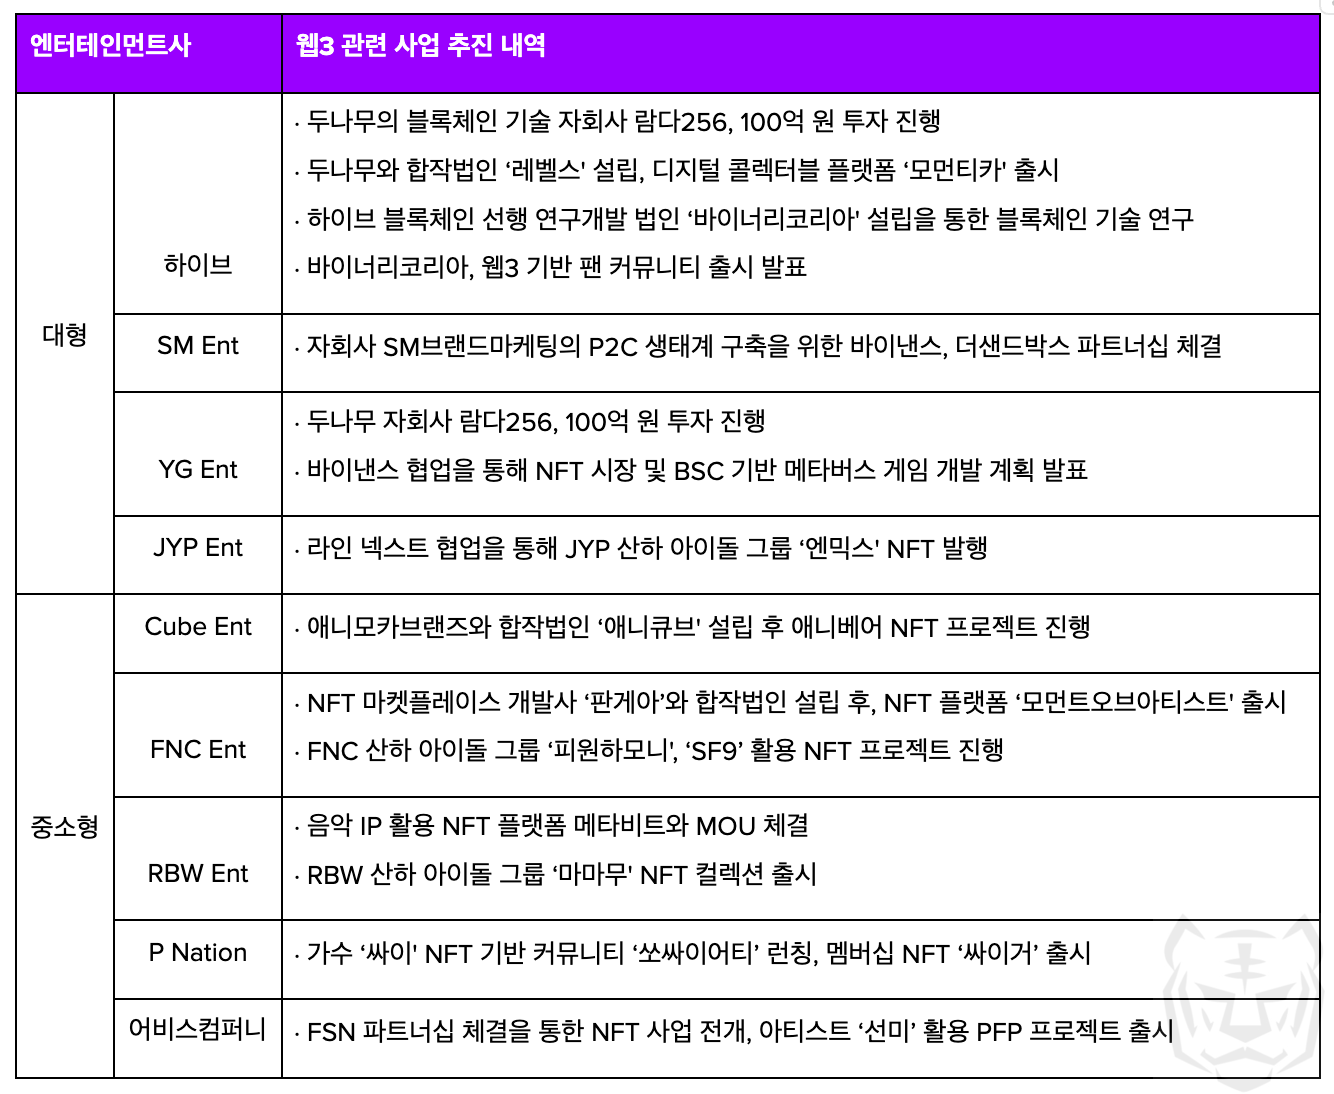 국내 엔터테인먼트사 웹3 시장 진출, 웹3 엔터테인먼트 사업 추진 내역, 하이브, 바이너리코리아, SM Entertainment, JYP Entertainment, 아이돌 NFT